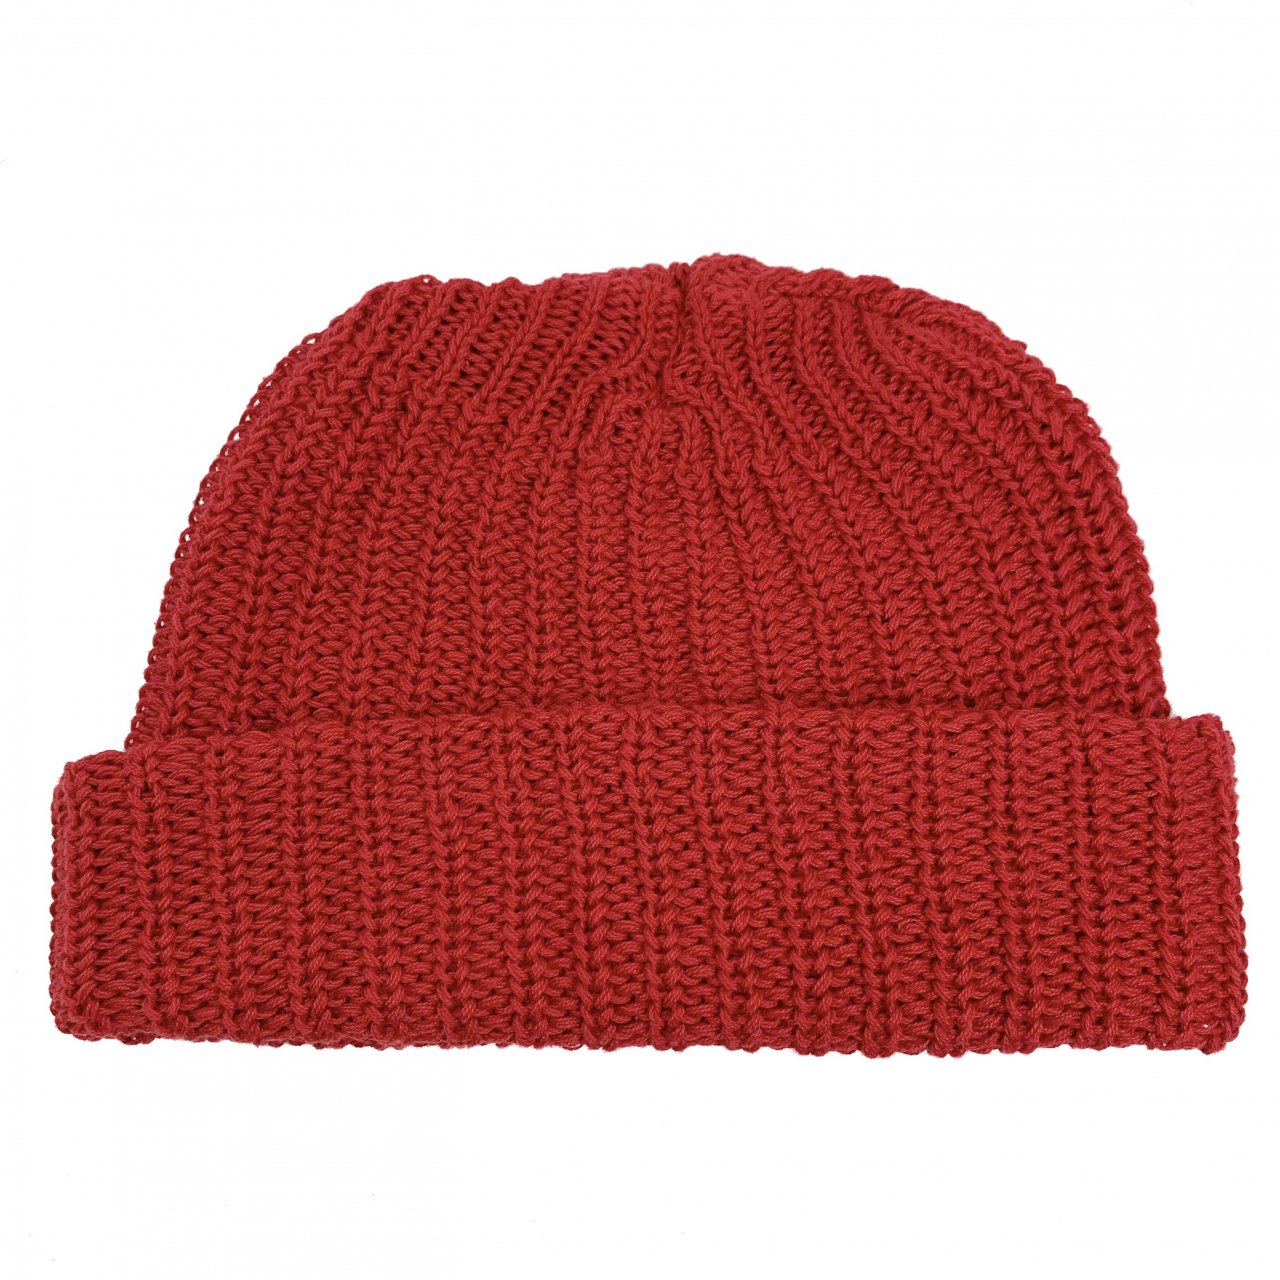 新品 USA製 COLUMBIA KNIT Cotton Short Knit Cap (RED) コロンビアニット コットンニットキャップ ニット帽  ショートタイプ 赤 レッド NEWJOKE ONLINE STORE